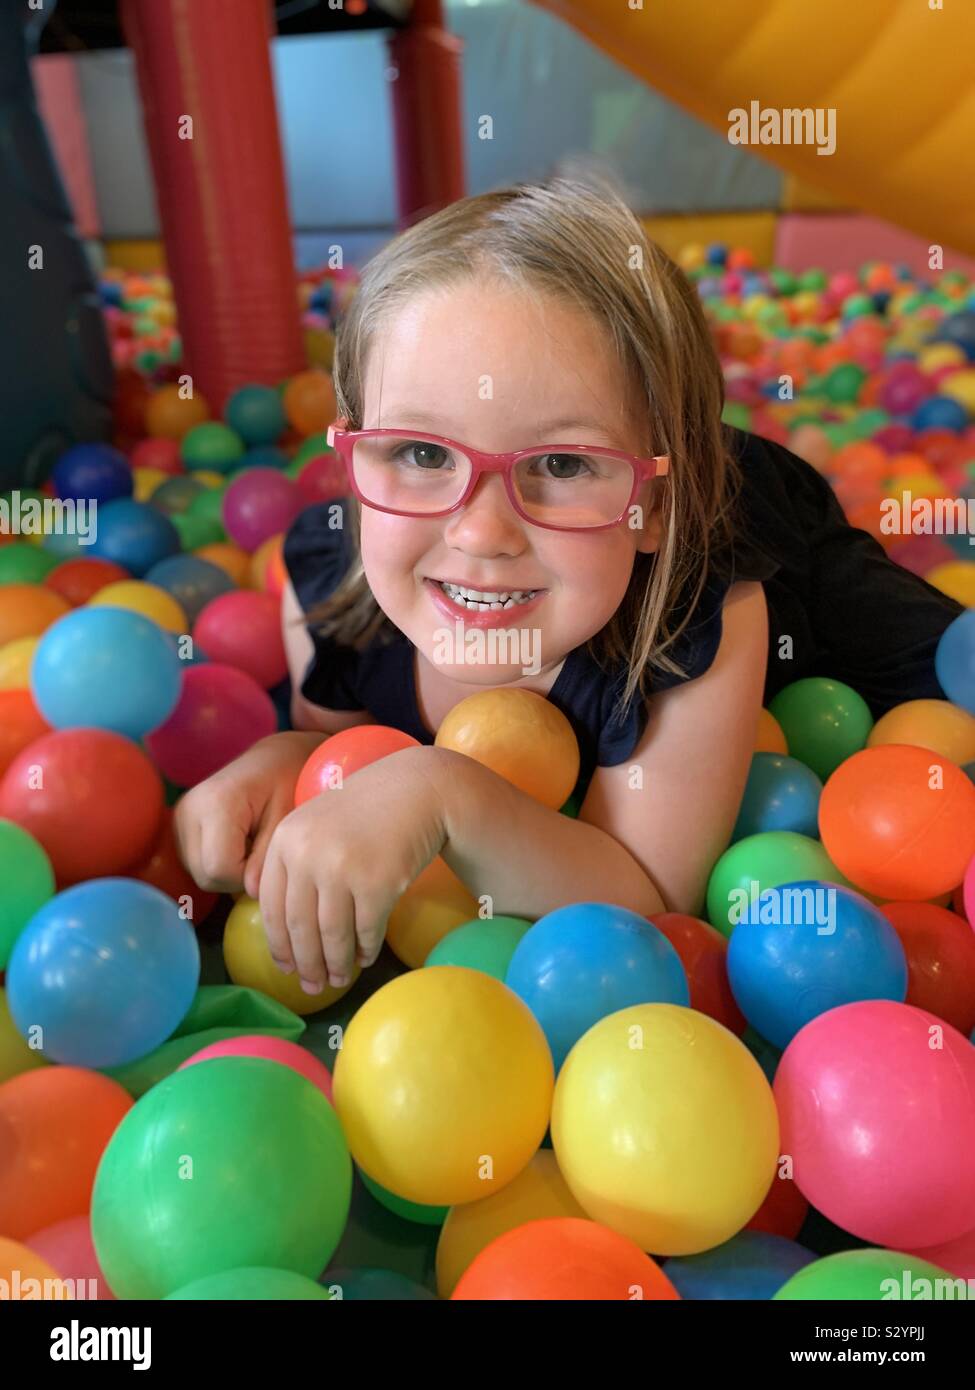 5 anno vecchia ragazza con gli occhiali in una fossa a sfera Foto Stock